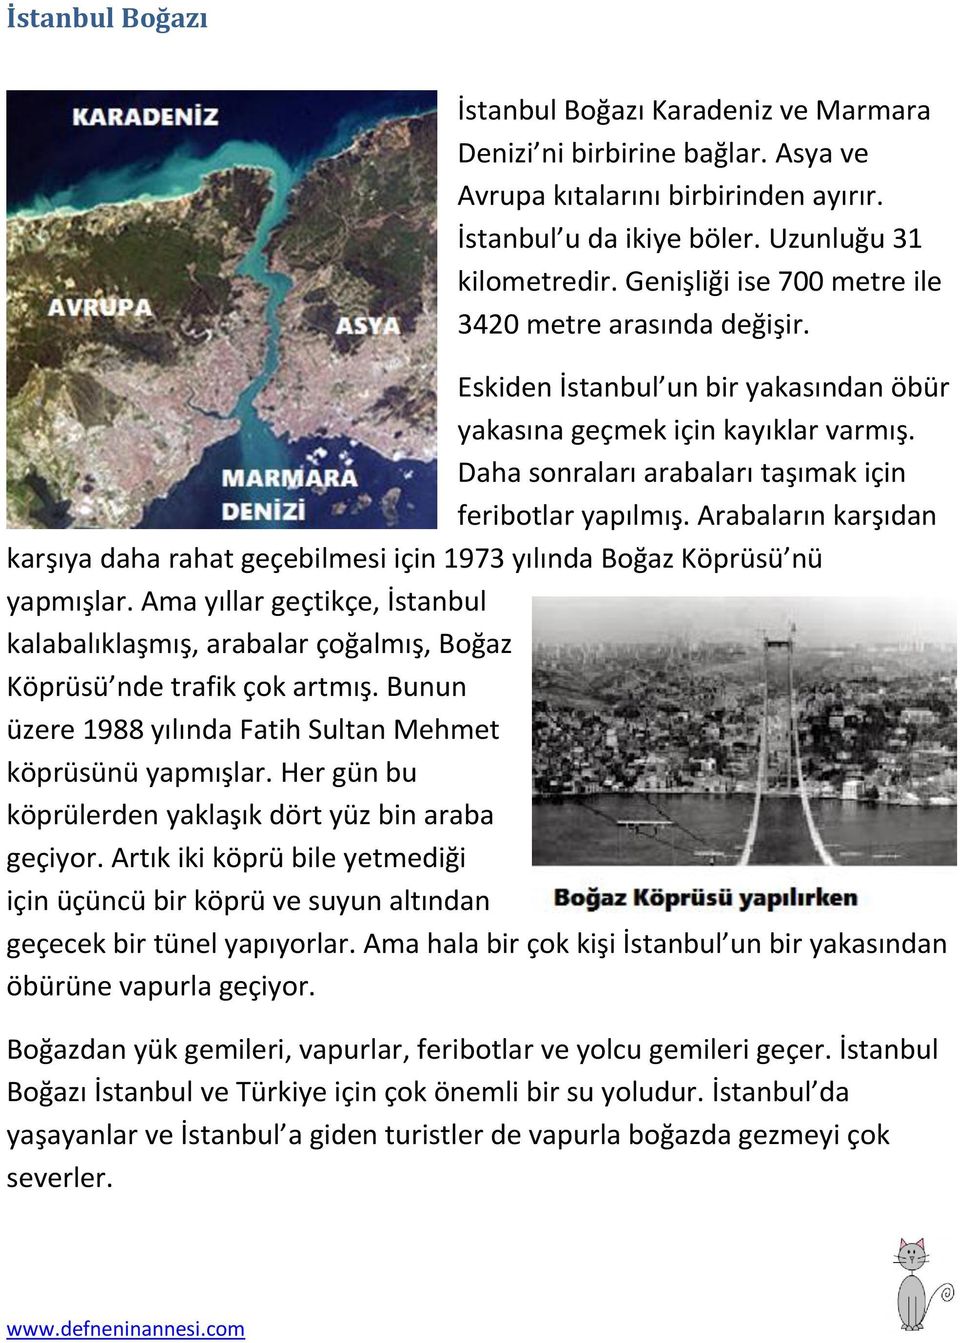 Arabaların karşıdan karşıya daha rahat geçebilmesi için 1973 yılında Boğaz Köprüsü nü yapmışlar. Ama yıllar geçtikçe, İstanbul kalabalıklaşmış, arabalar çoğalmış, Boğaz Köprüsü nde trafik çok artmış.